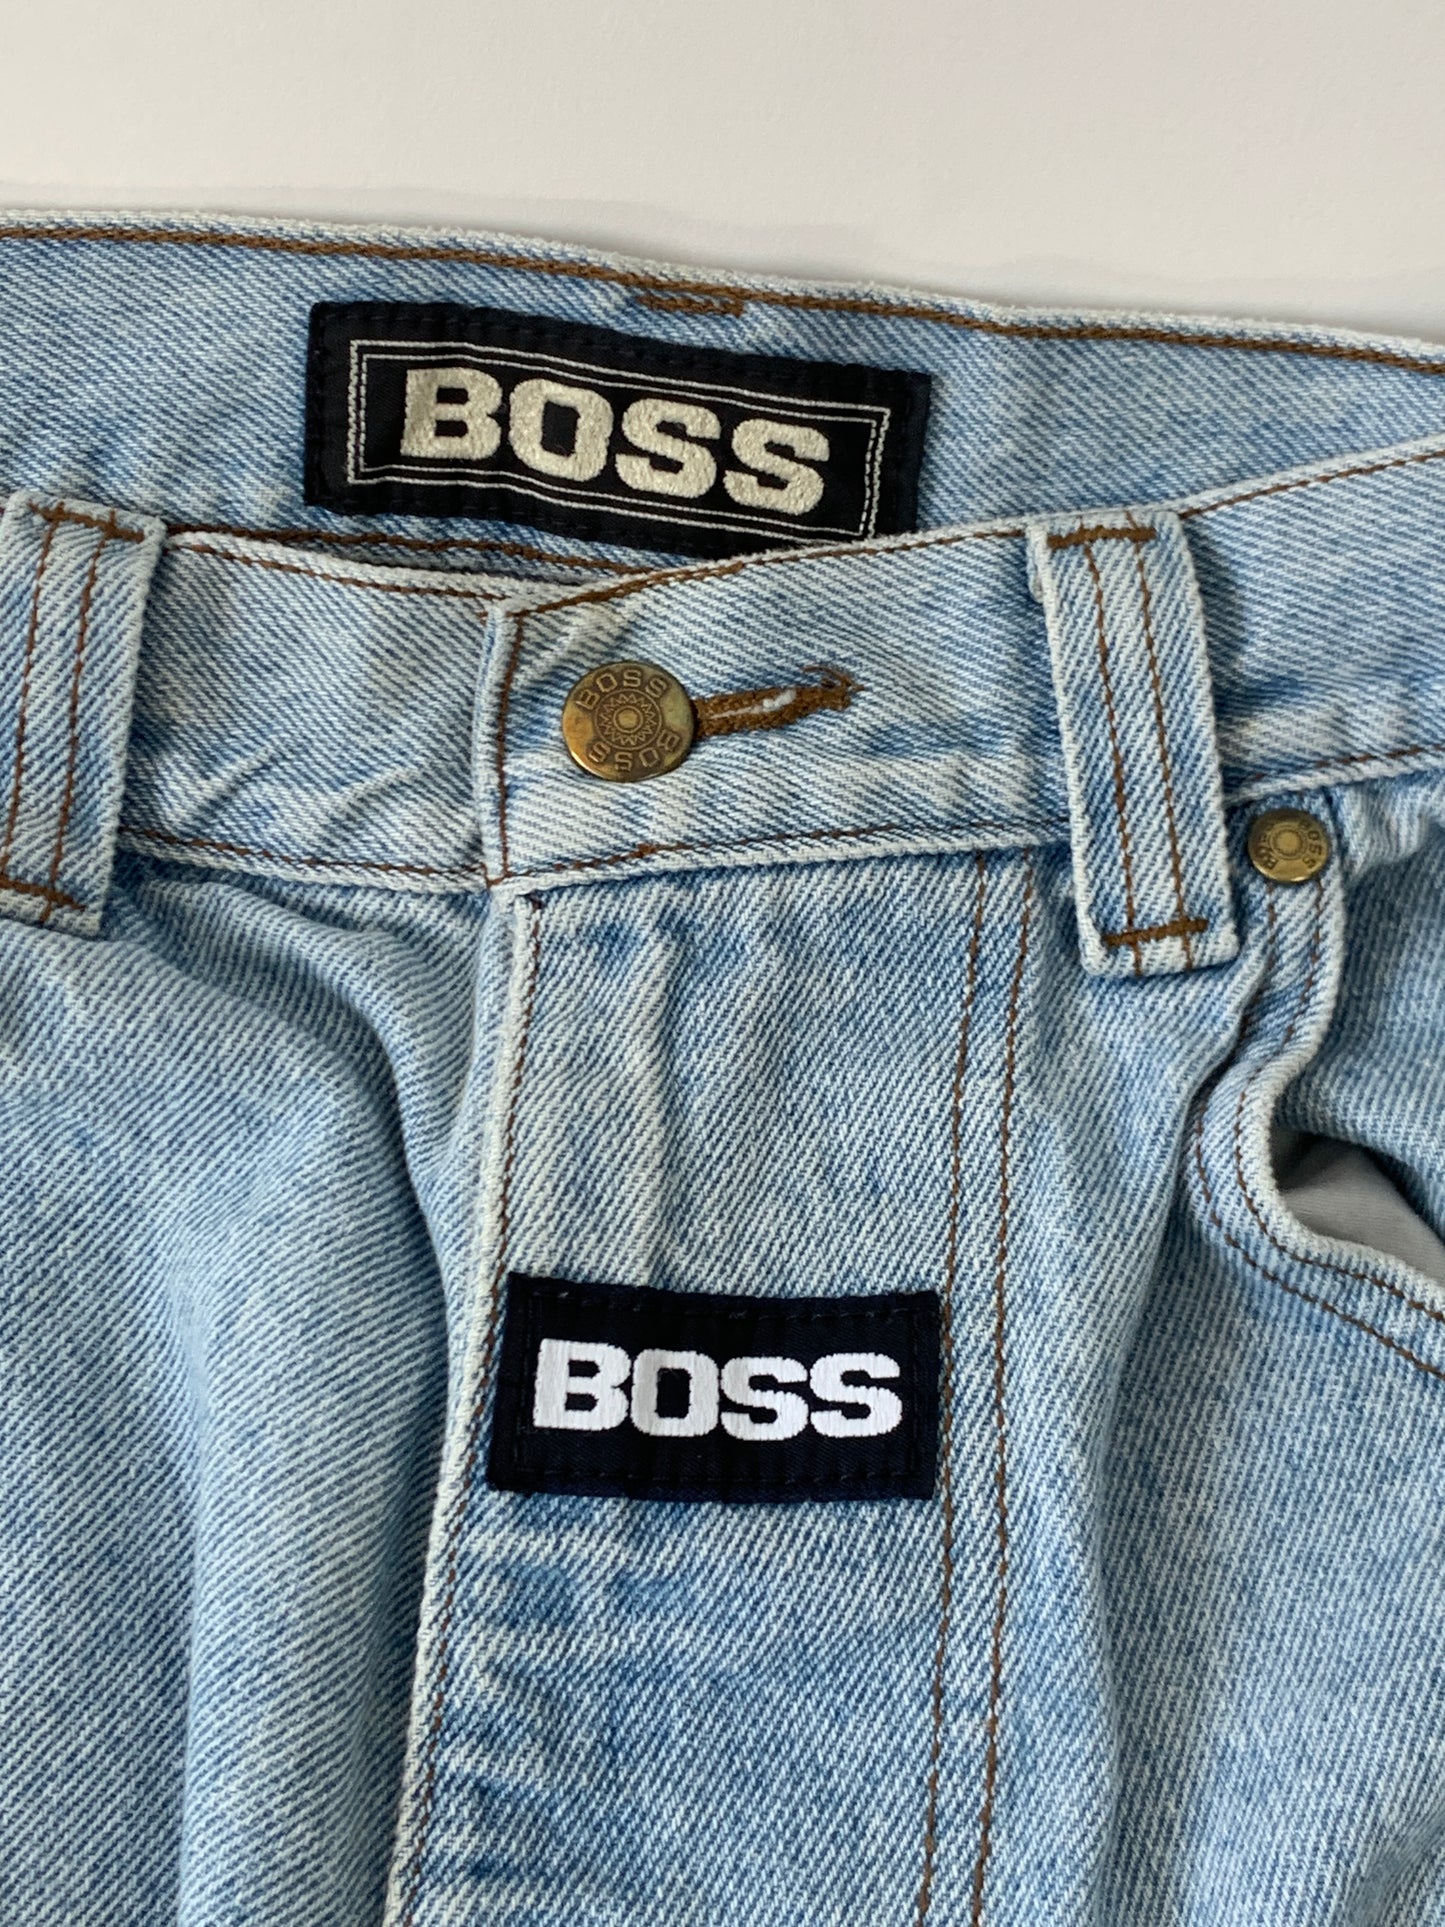 BOSS Vintage Baggy Side Bag Jeans - 33